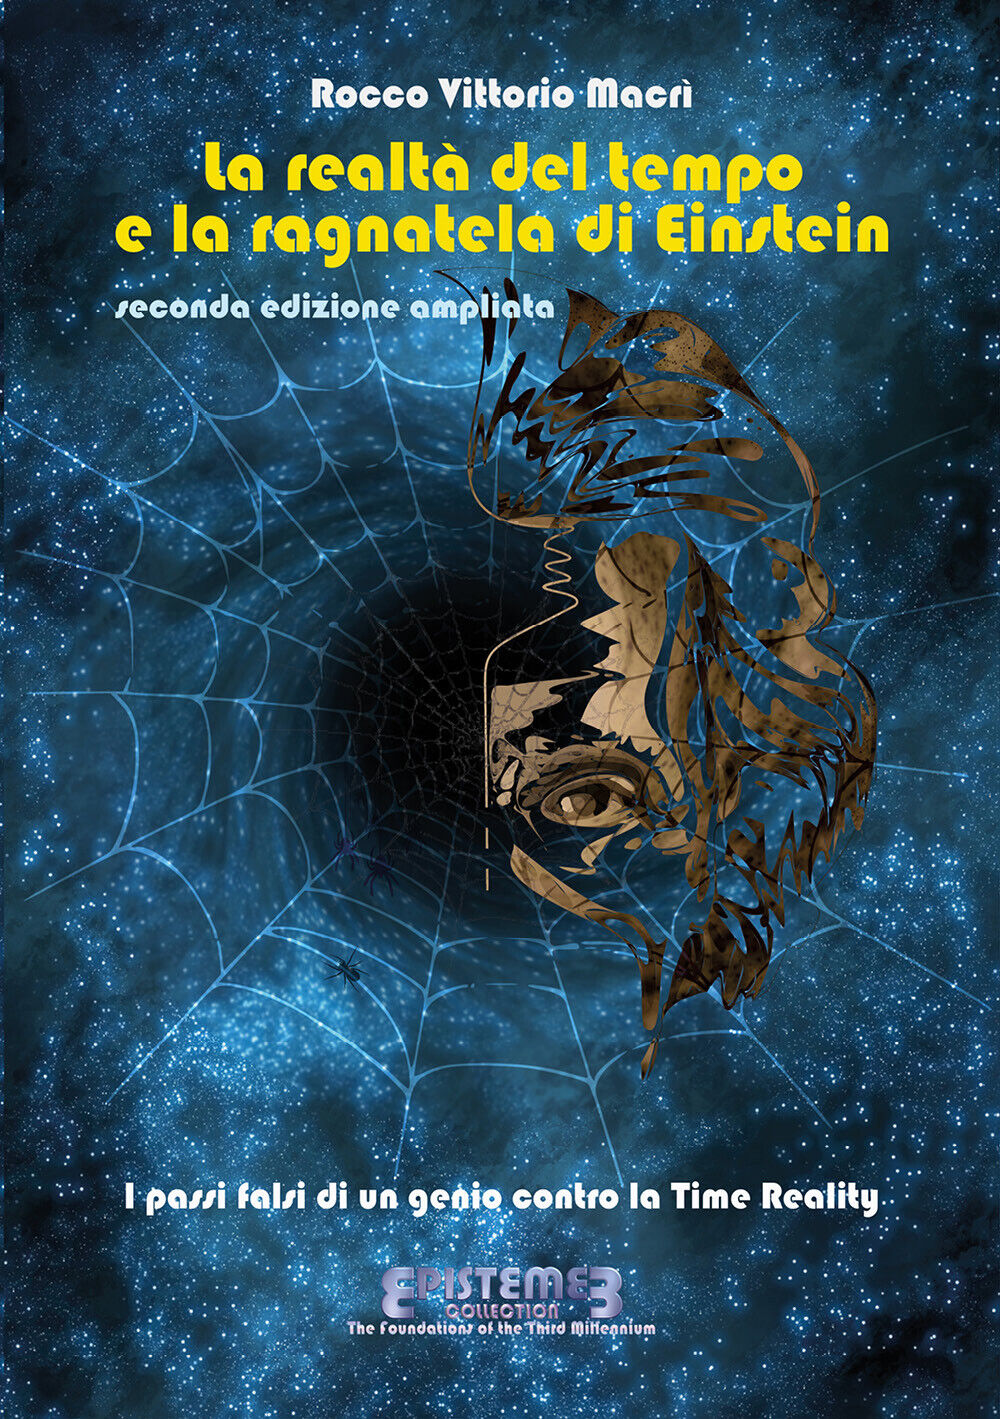 La realt? del tempo e la ragnatela di Einstein - II edizione -  Macri,  2020,  